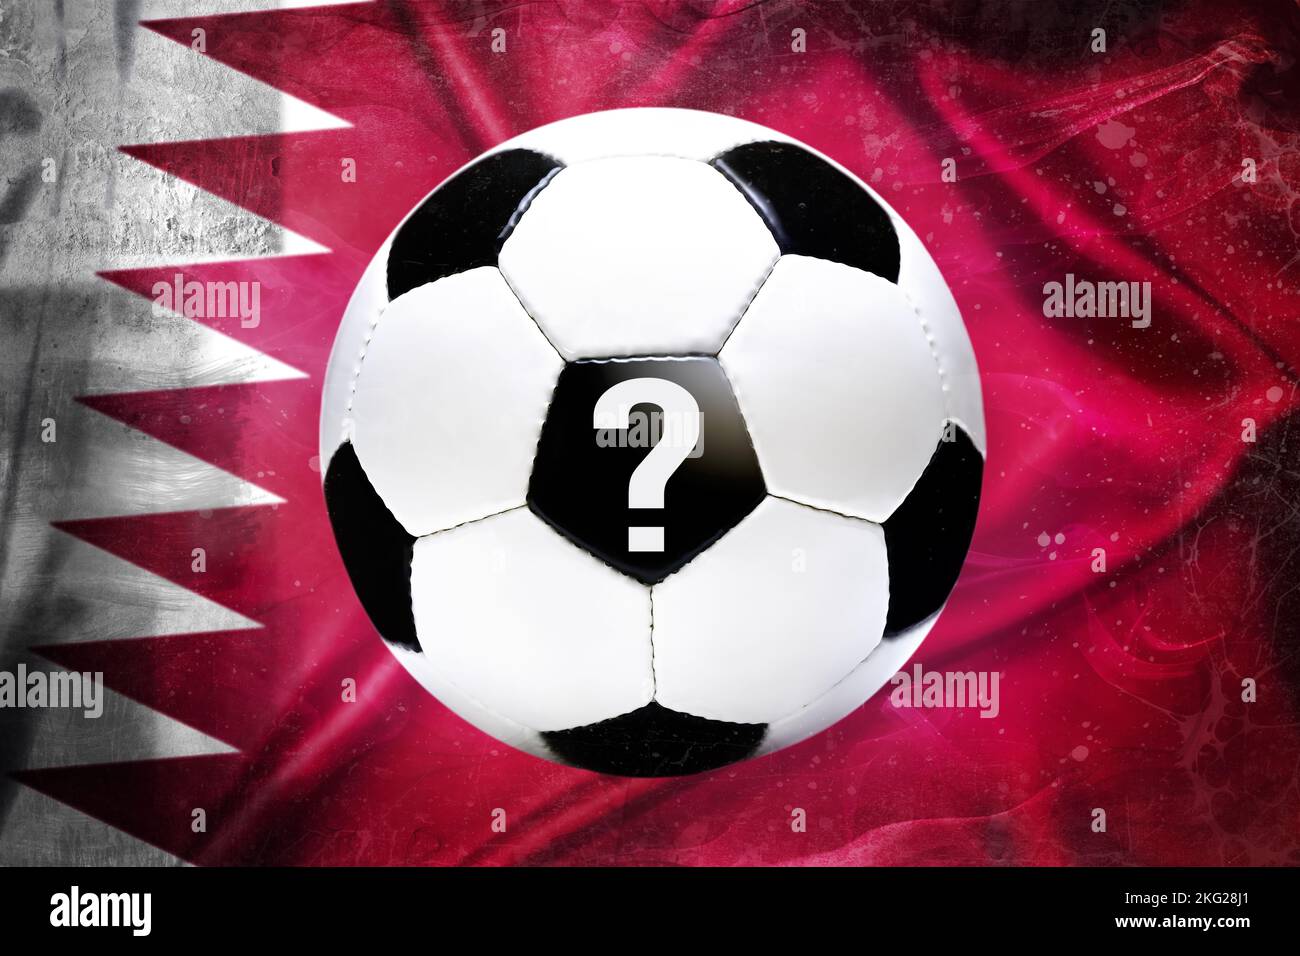 Fußball und Fragezeichen vor der Flagge Katars, Boykott der Fußballweltmeisterschaft, symbolisches Bild Stockfoto